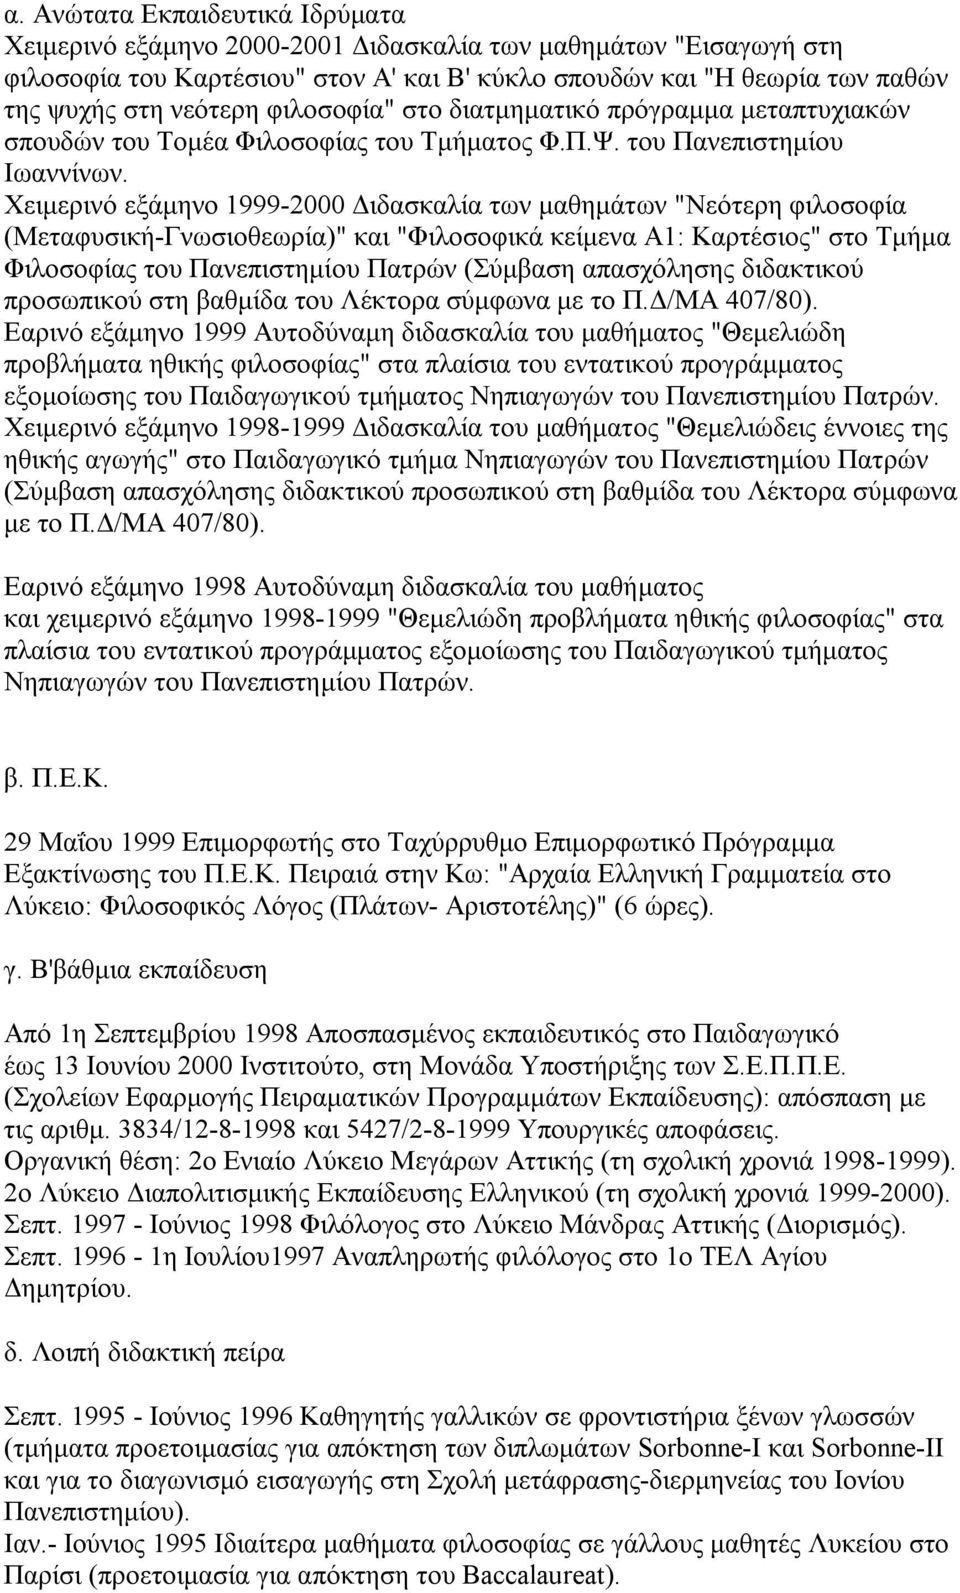 Χειμερινό εξάμηνο 1999-2000 Διδασκαλία των μαθημάτων "Νεότερη φιλοσοφία (Μεταφυσική-Γνωσιοθεωρία)" και "Φιλοσοφικά κείμενα Α1: Καρτέσιος" στο Τμήμα Φιλοσοφίας του Πανεπιστημίου Πατρών (Σύμβαση